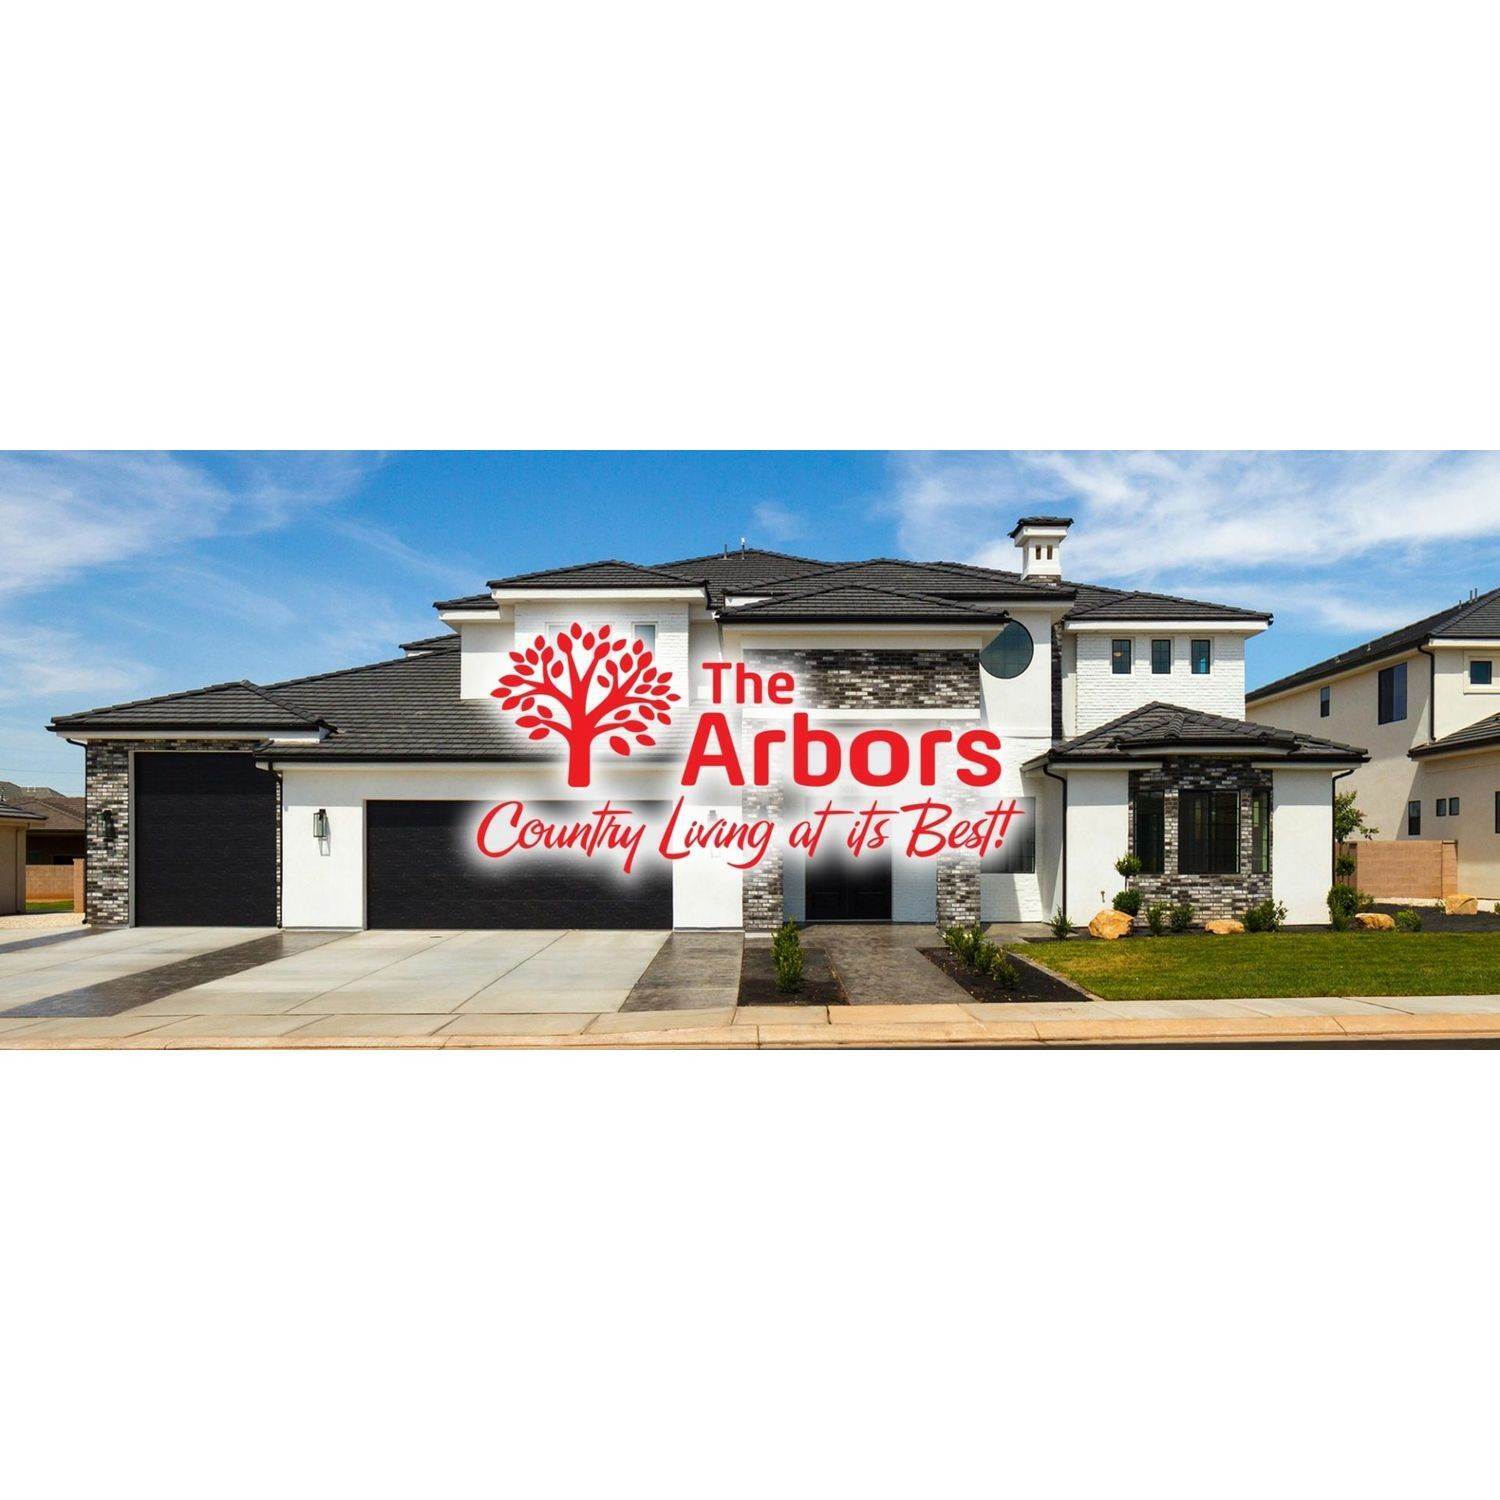 9. The Arbors building at 2922 S Magnolia Ln, St. George, UT 84790